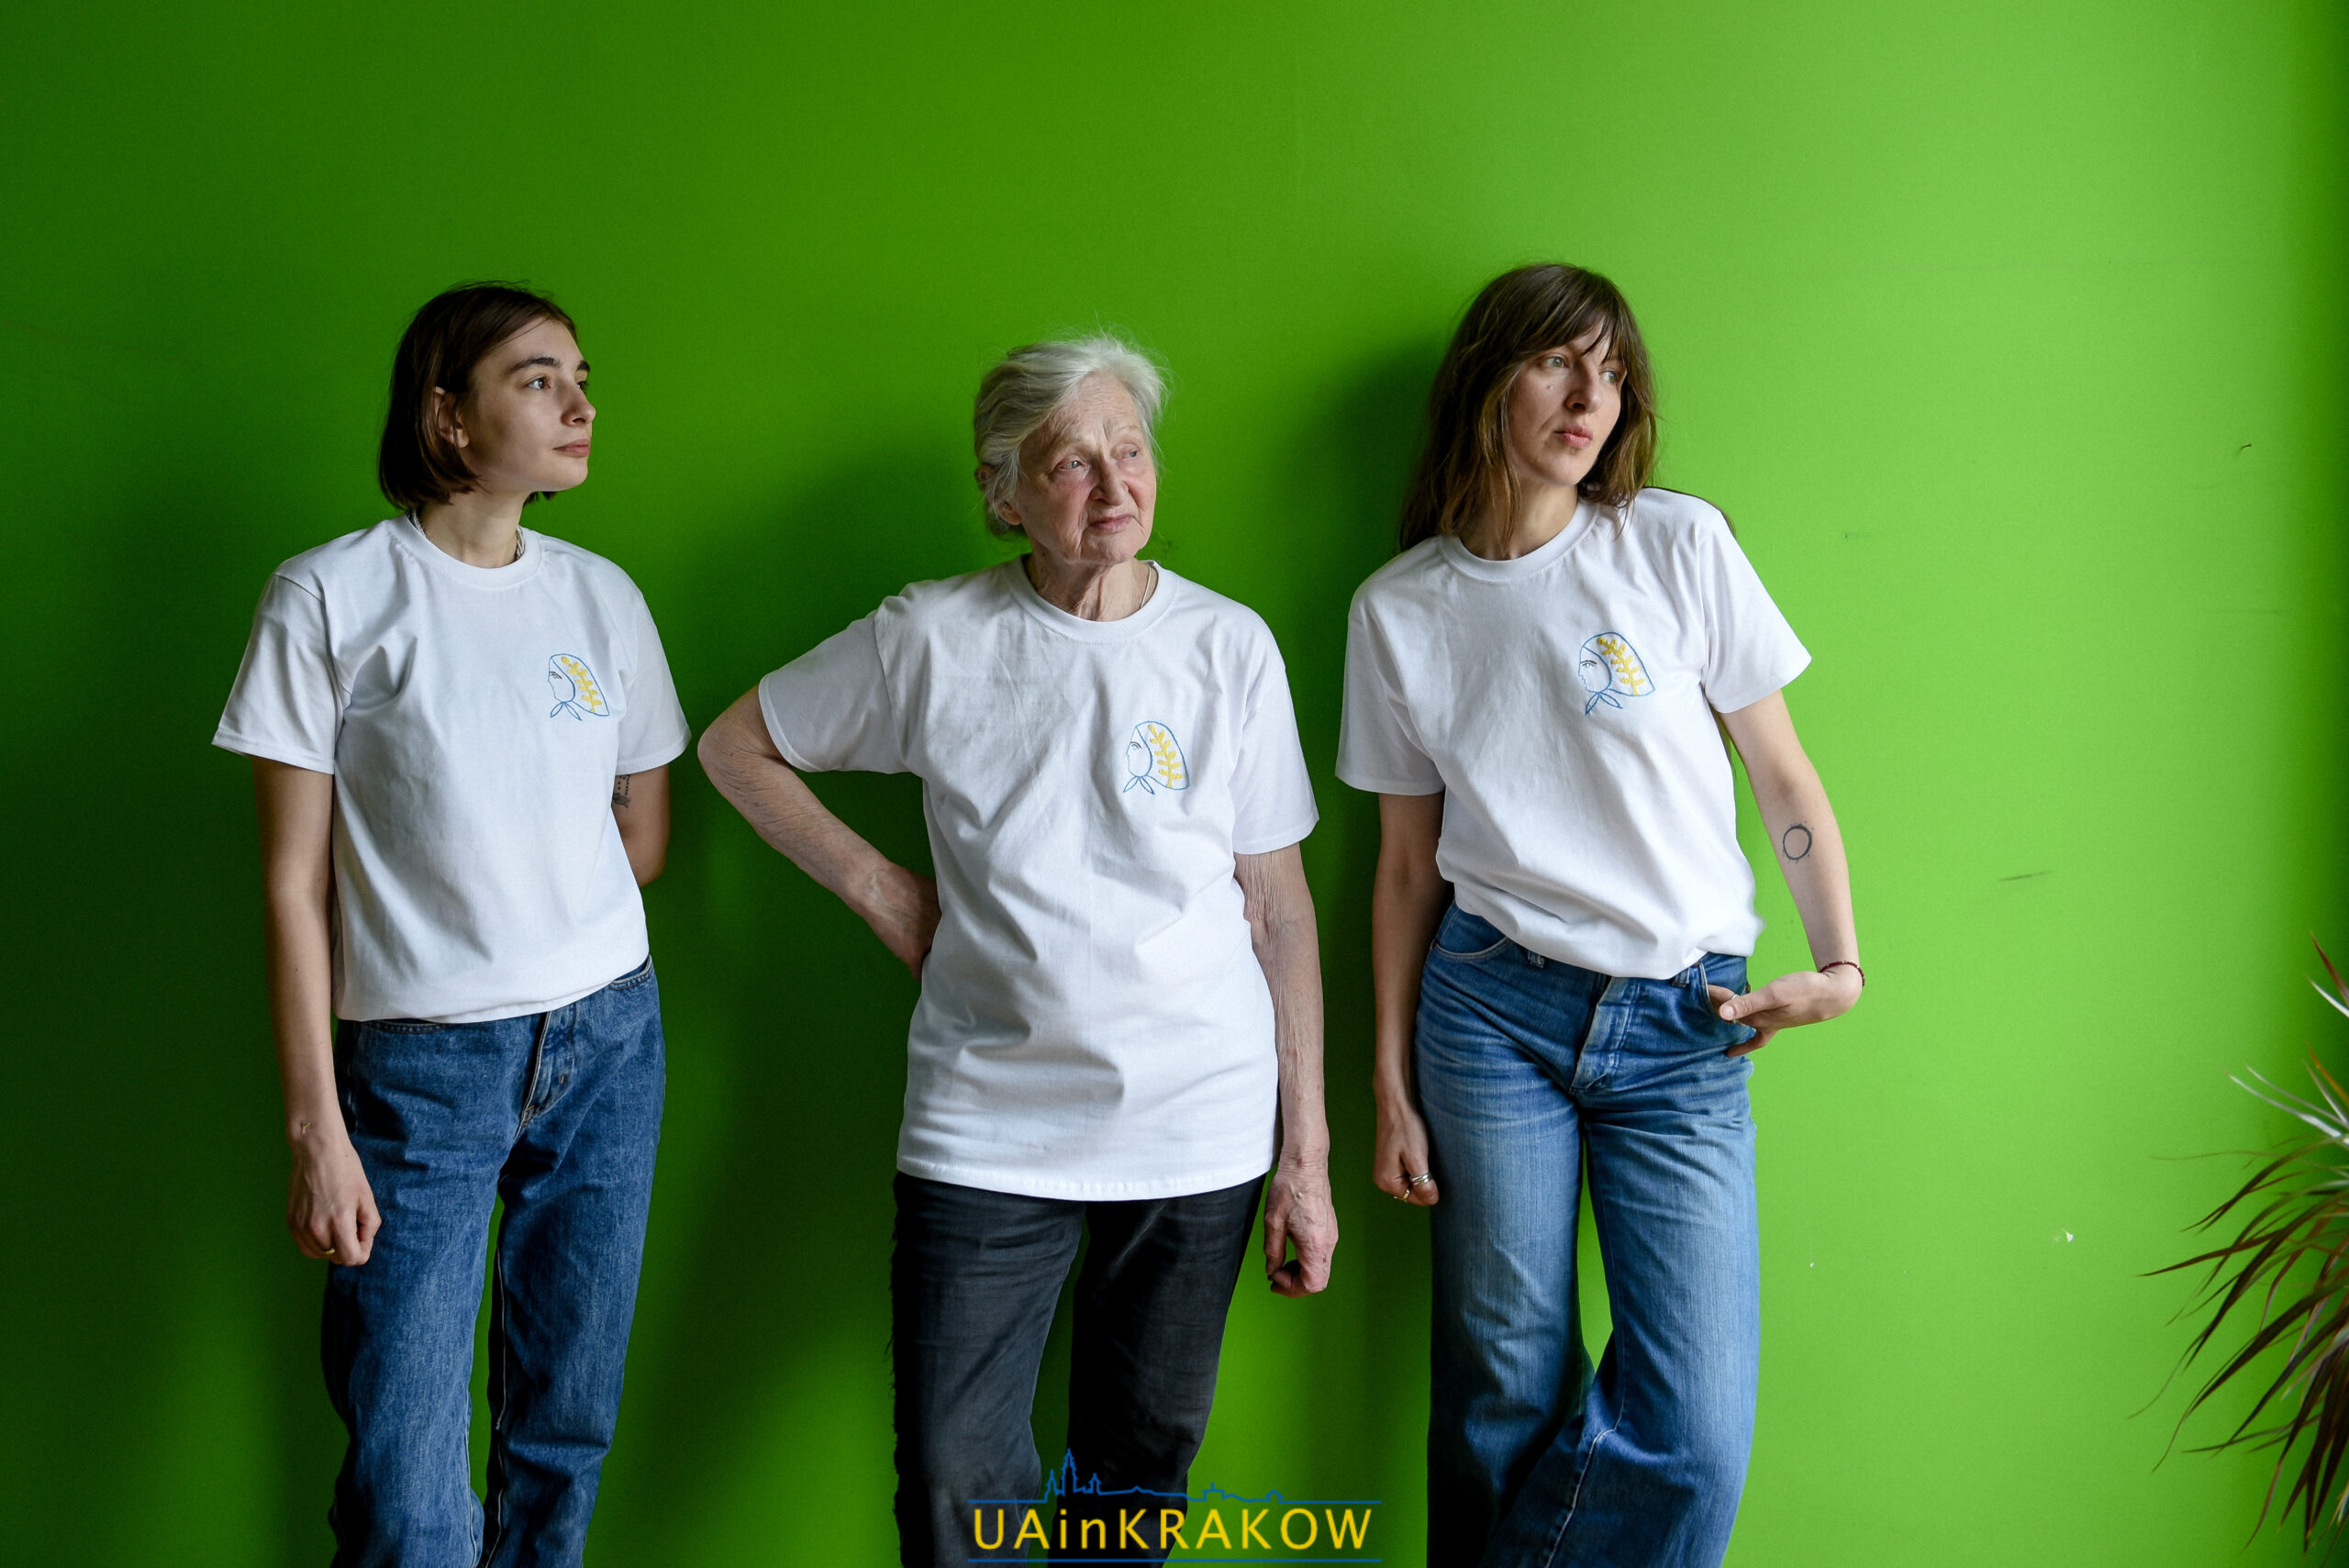 “Футболка з Феліксою”: як бабуся з України створює брендовий одяг у Кракові dsc 4770 scaled